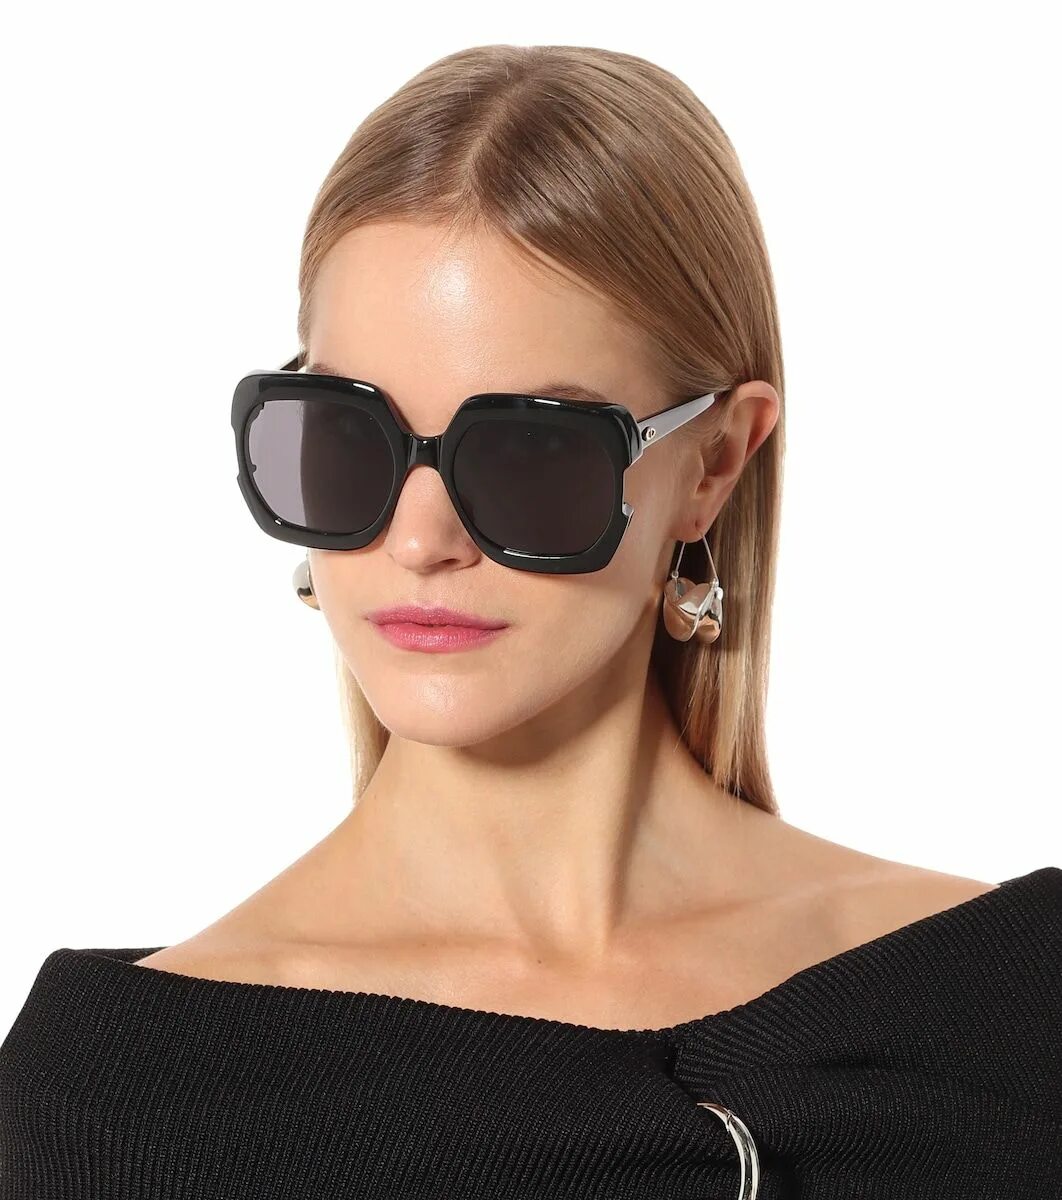 Очки солнцезащитные Кристиан диор. Dior Gaia очки. Очки Кристиан диор женские солнцезащитные. Очки Кристиан диор женские солнцезащитные 2021.